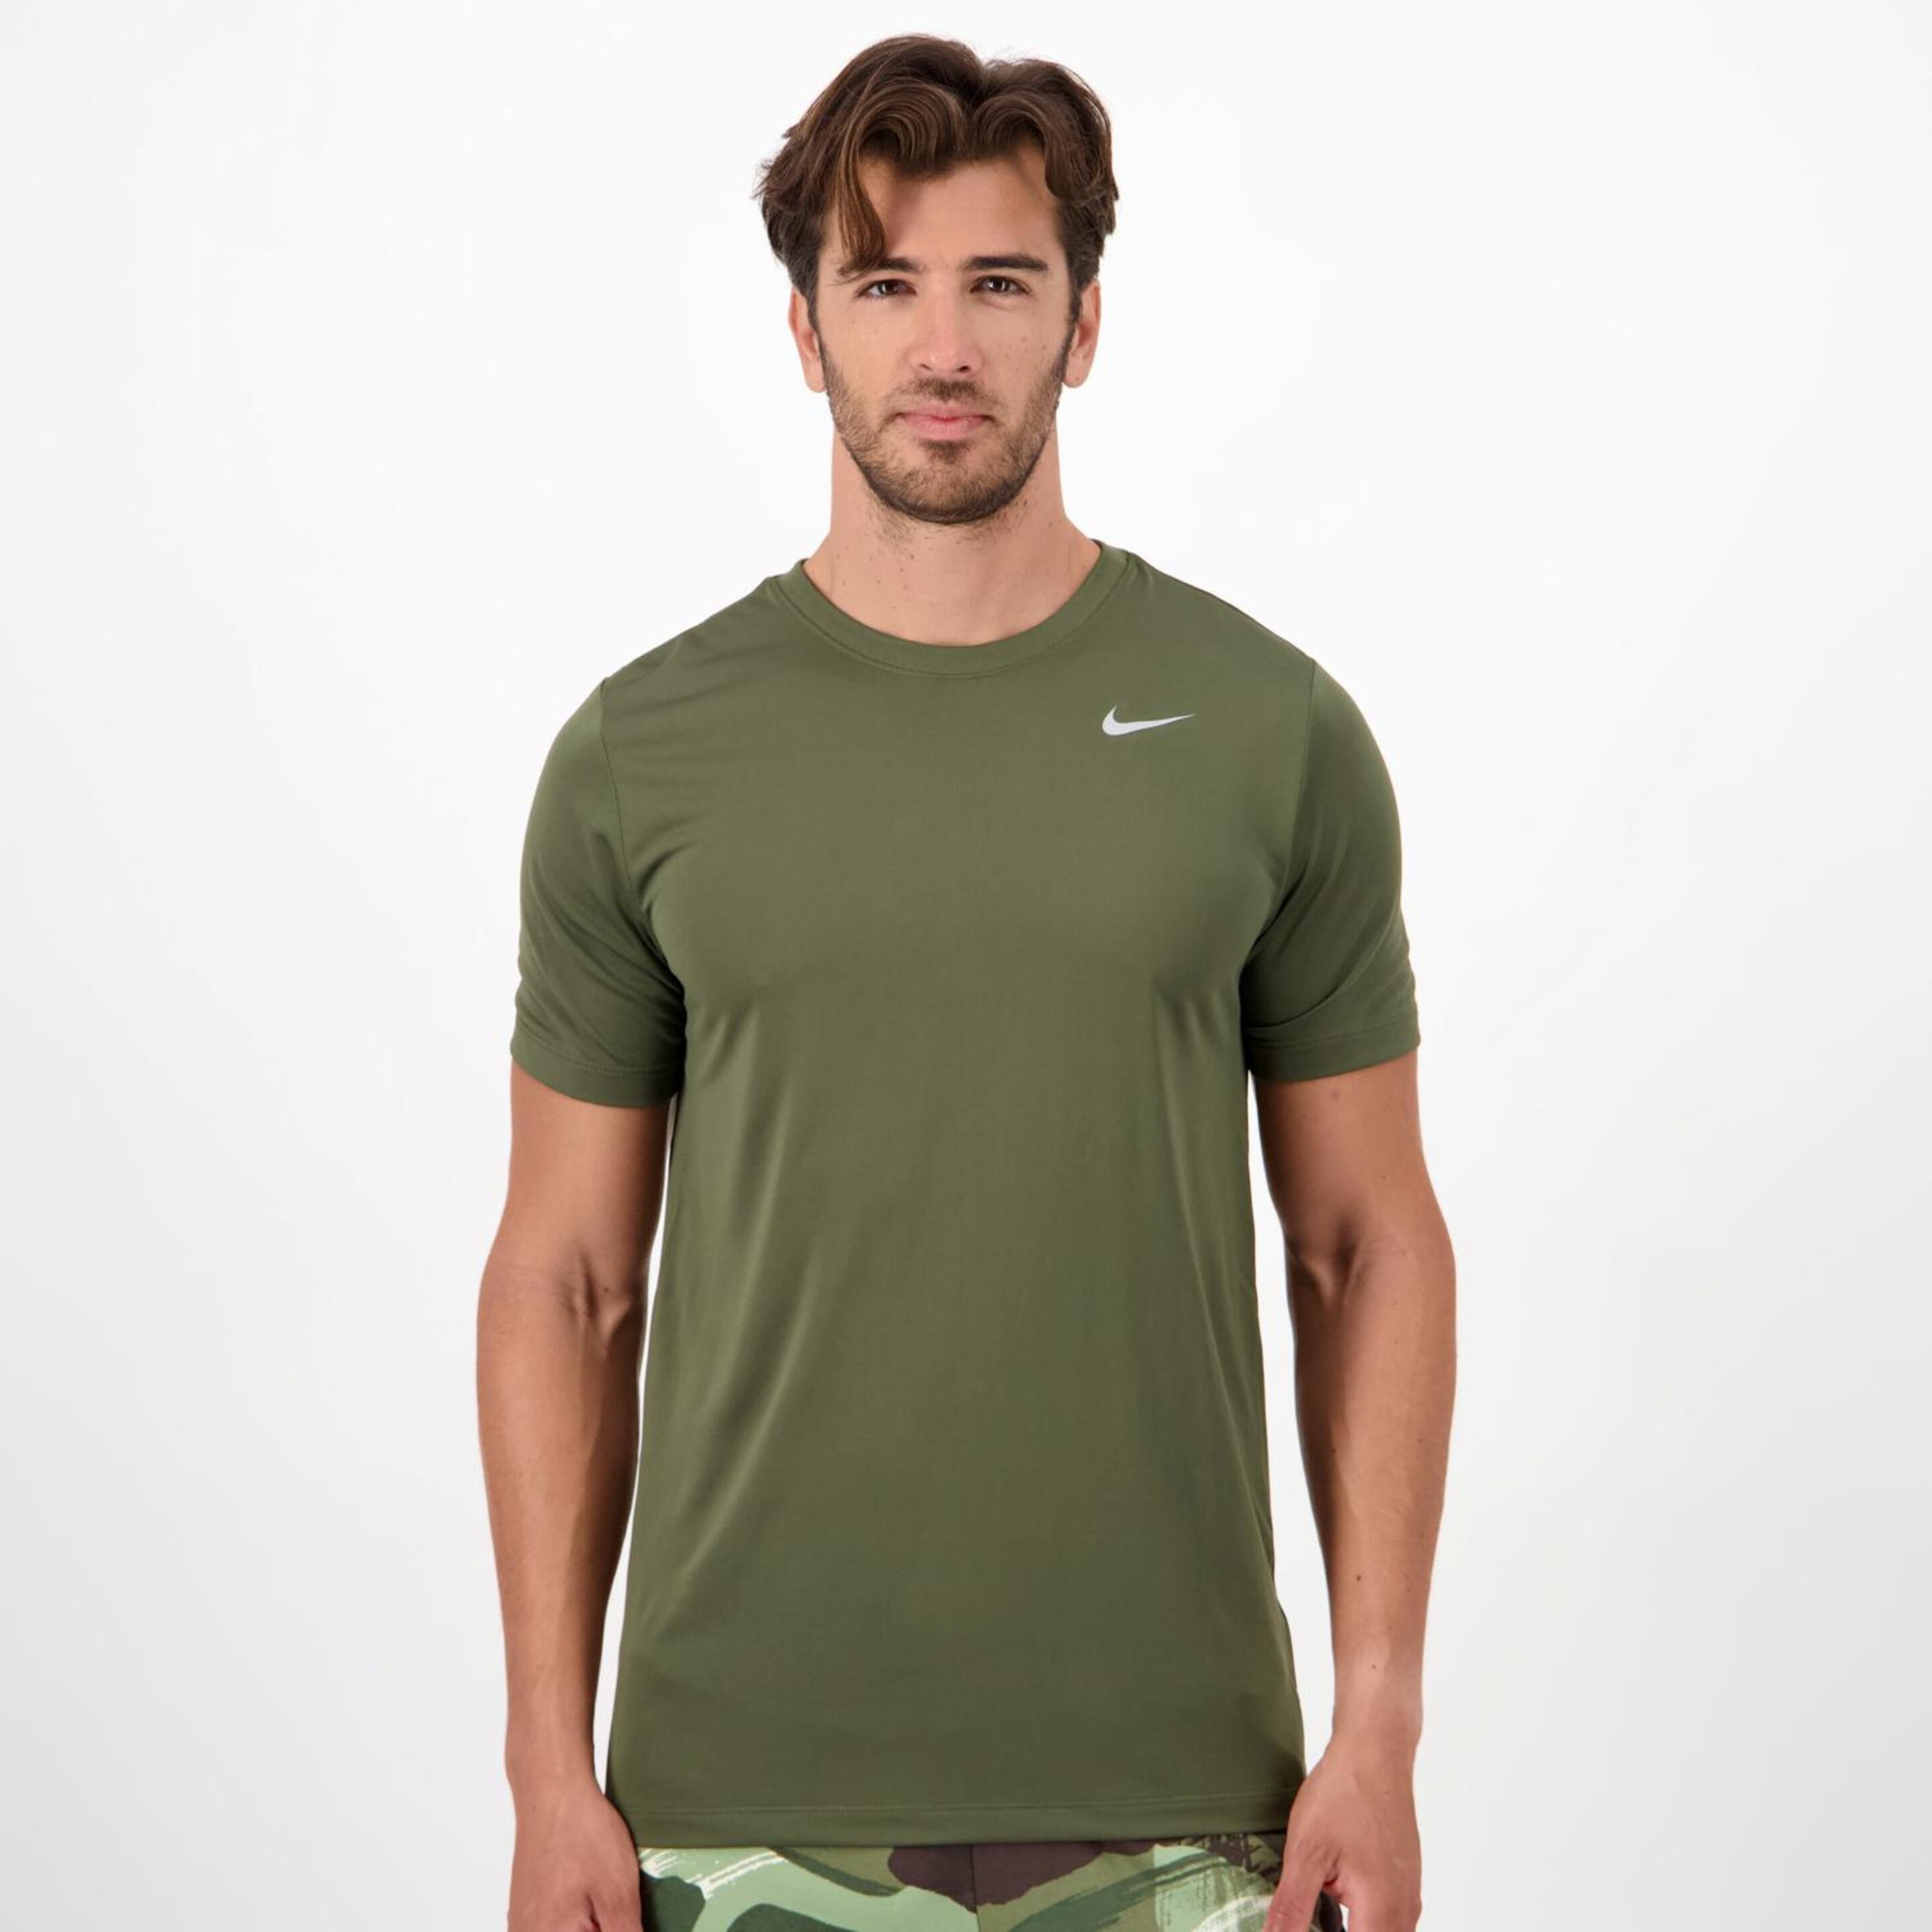 Nike Legend - Kaki - Camiseta Running Hombre